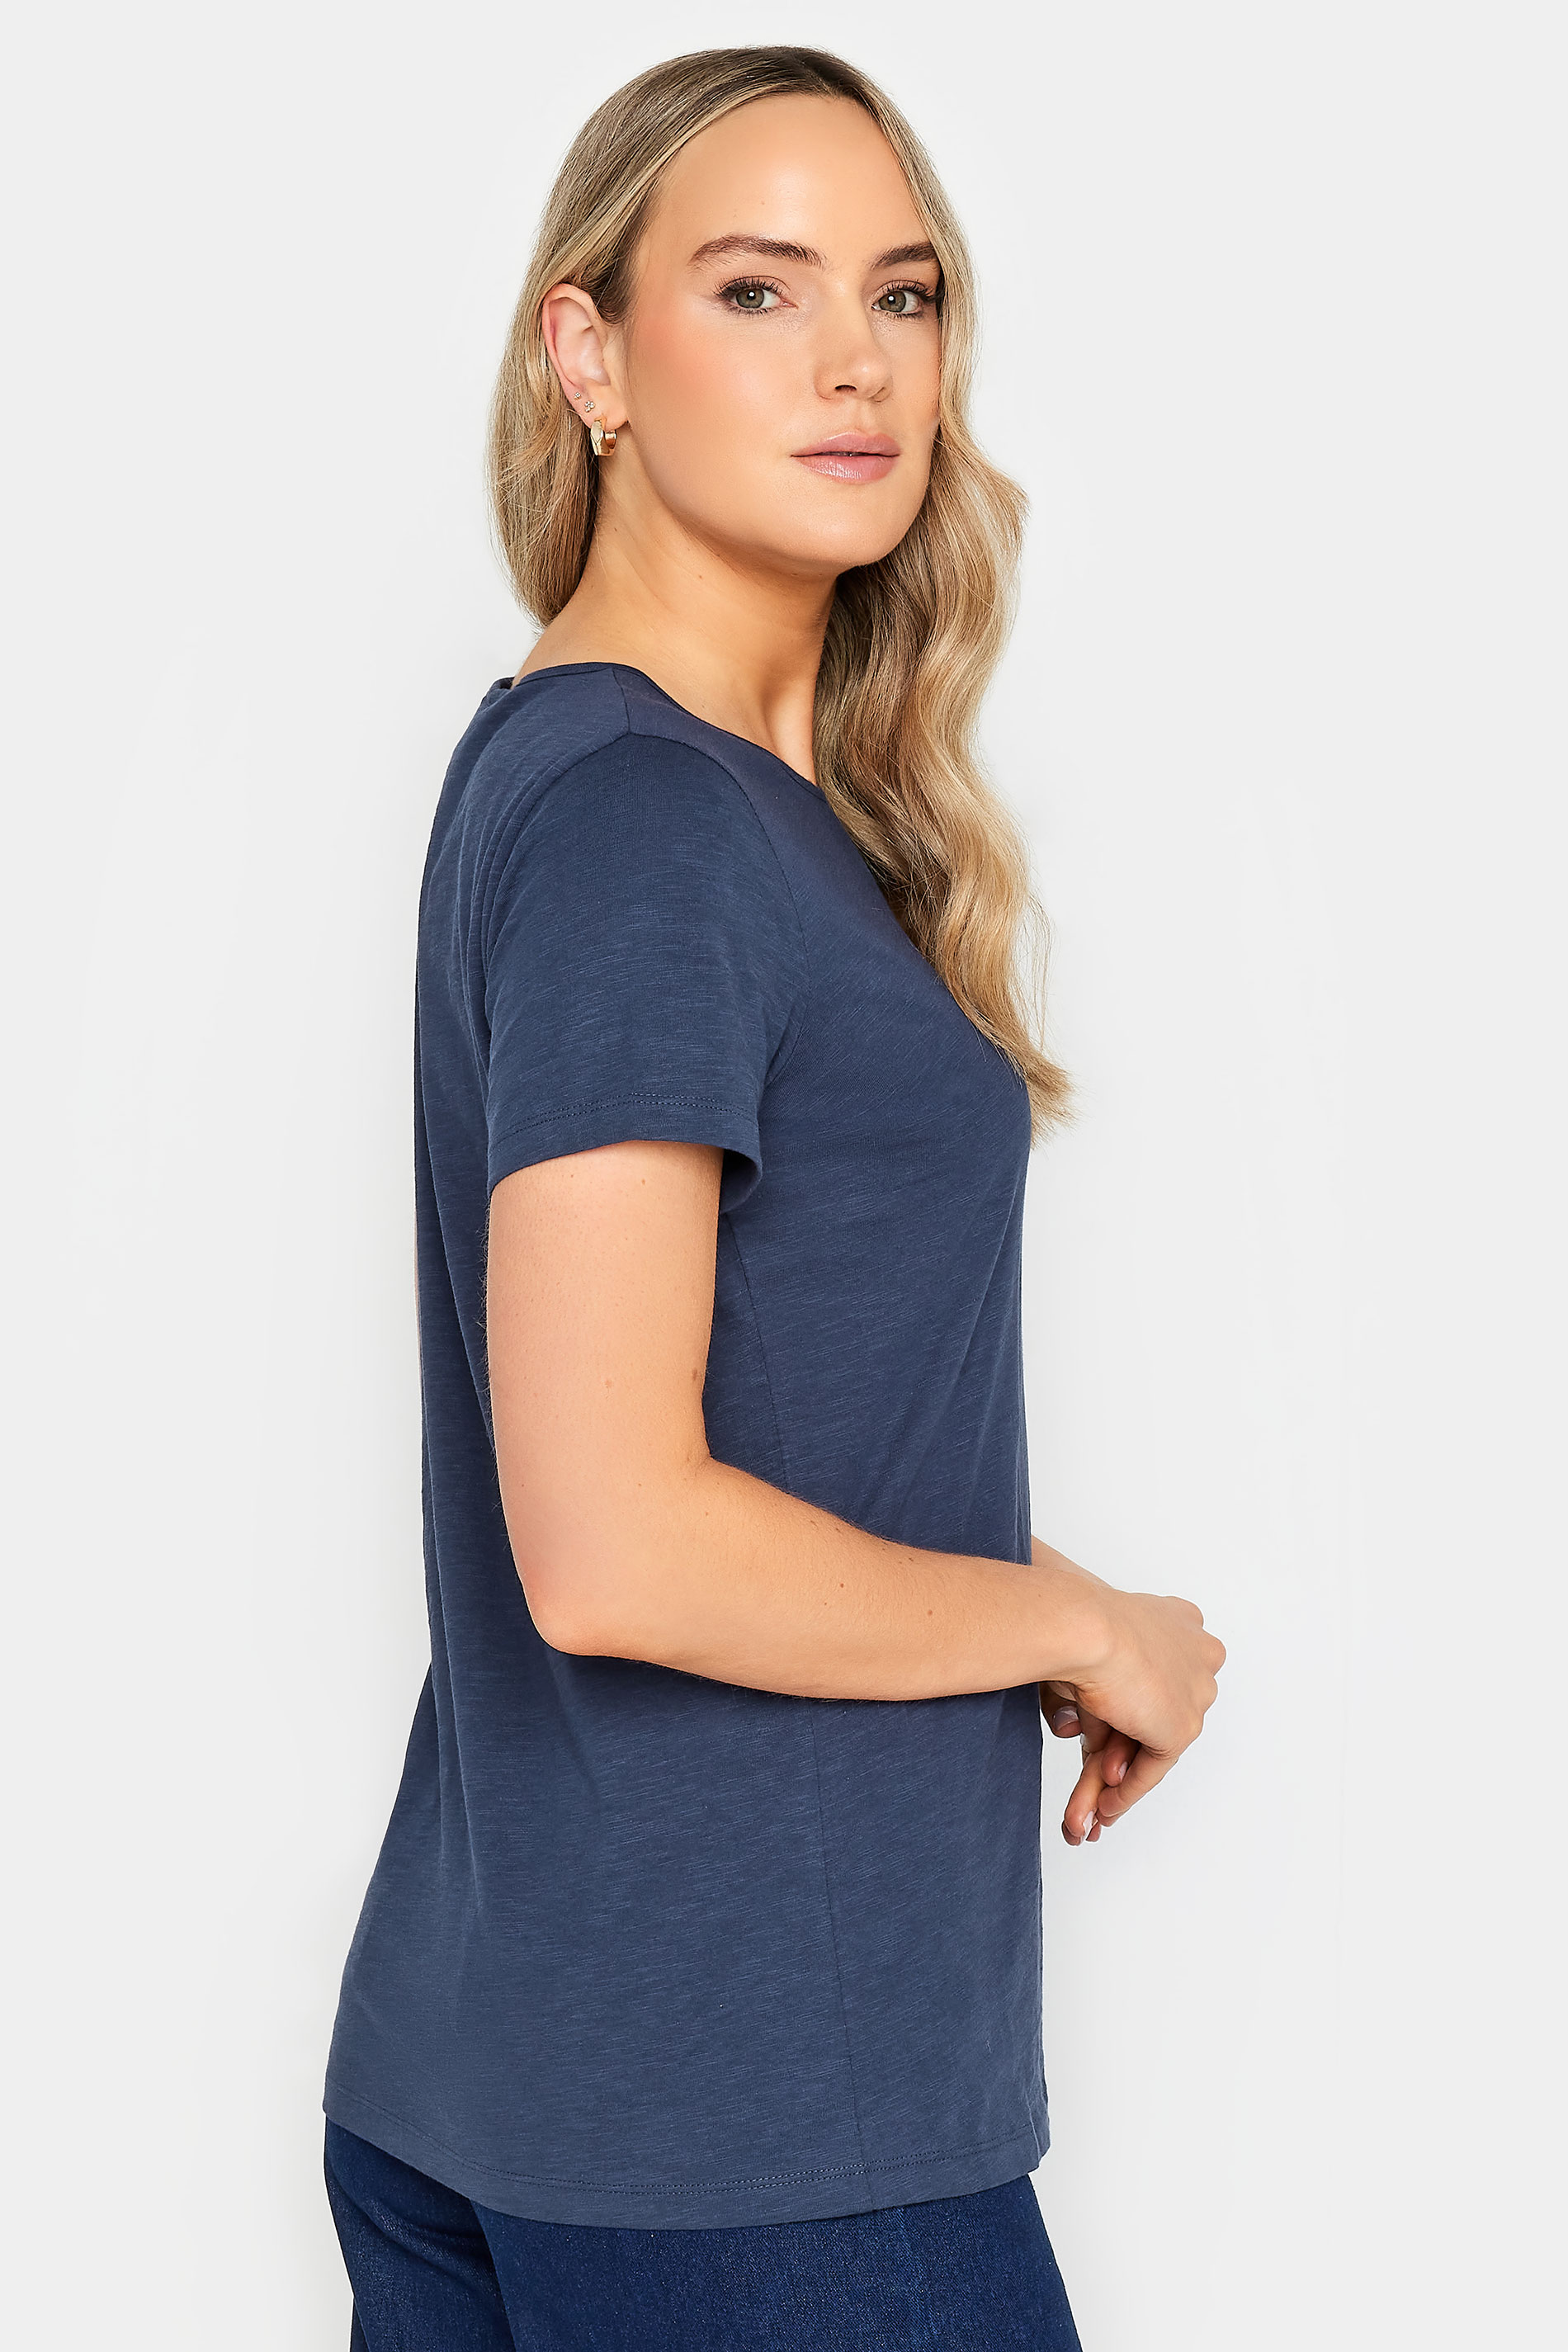 LTS Tall Womens Navy Blue Short Sleeve T-Shirt | Long Tall Sally 3